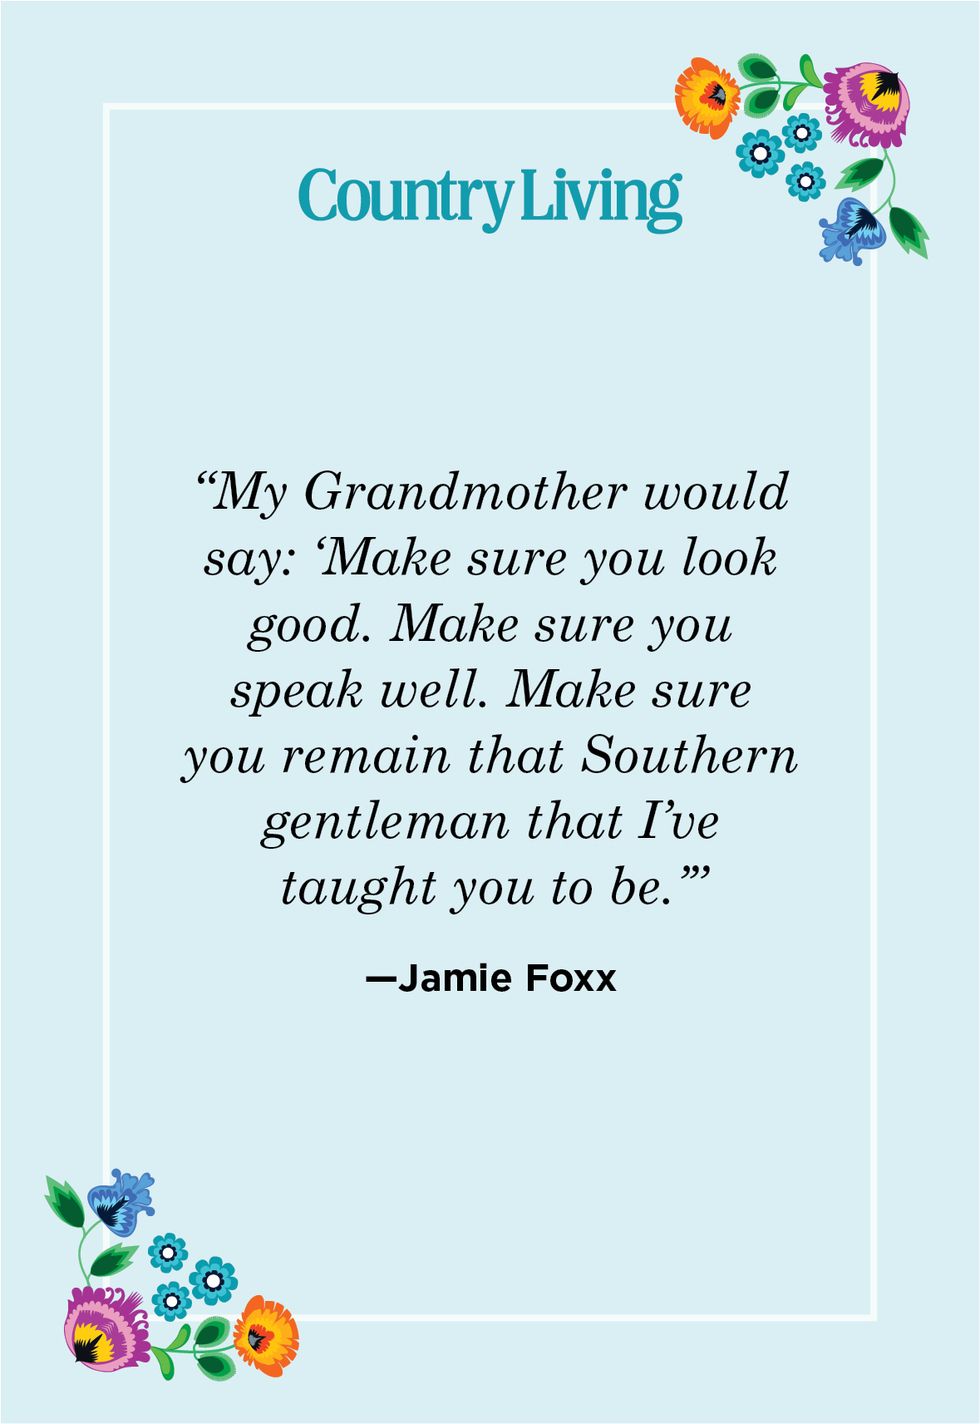 grandma quote by jamie foxx